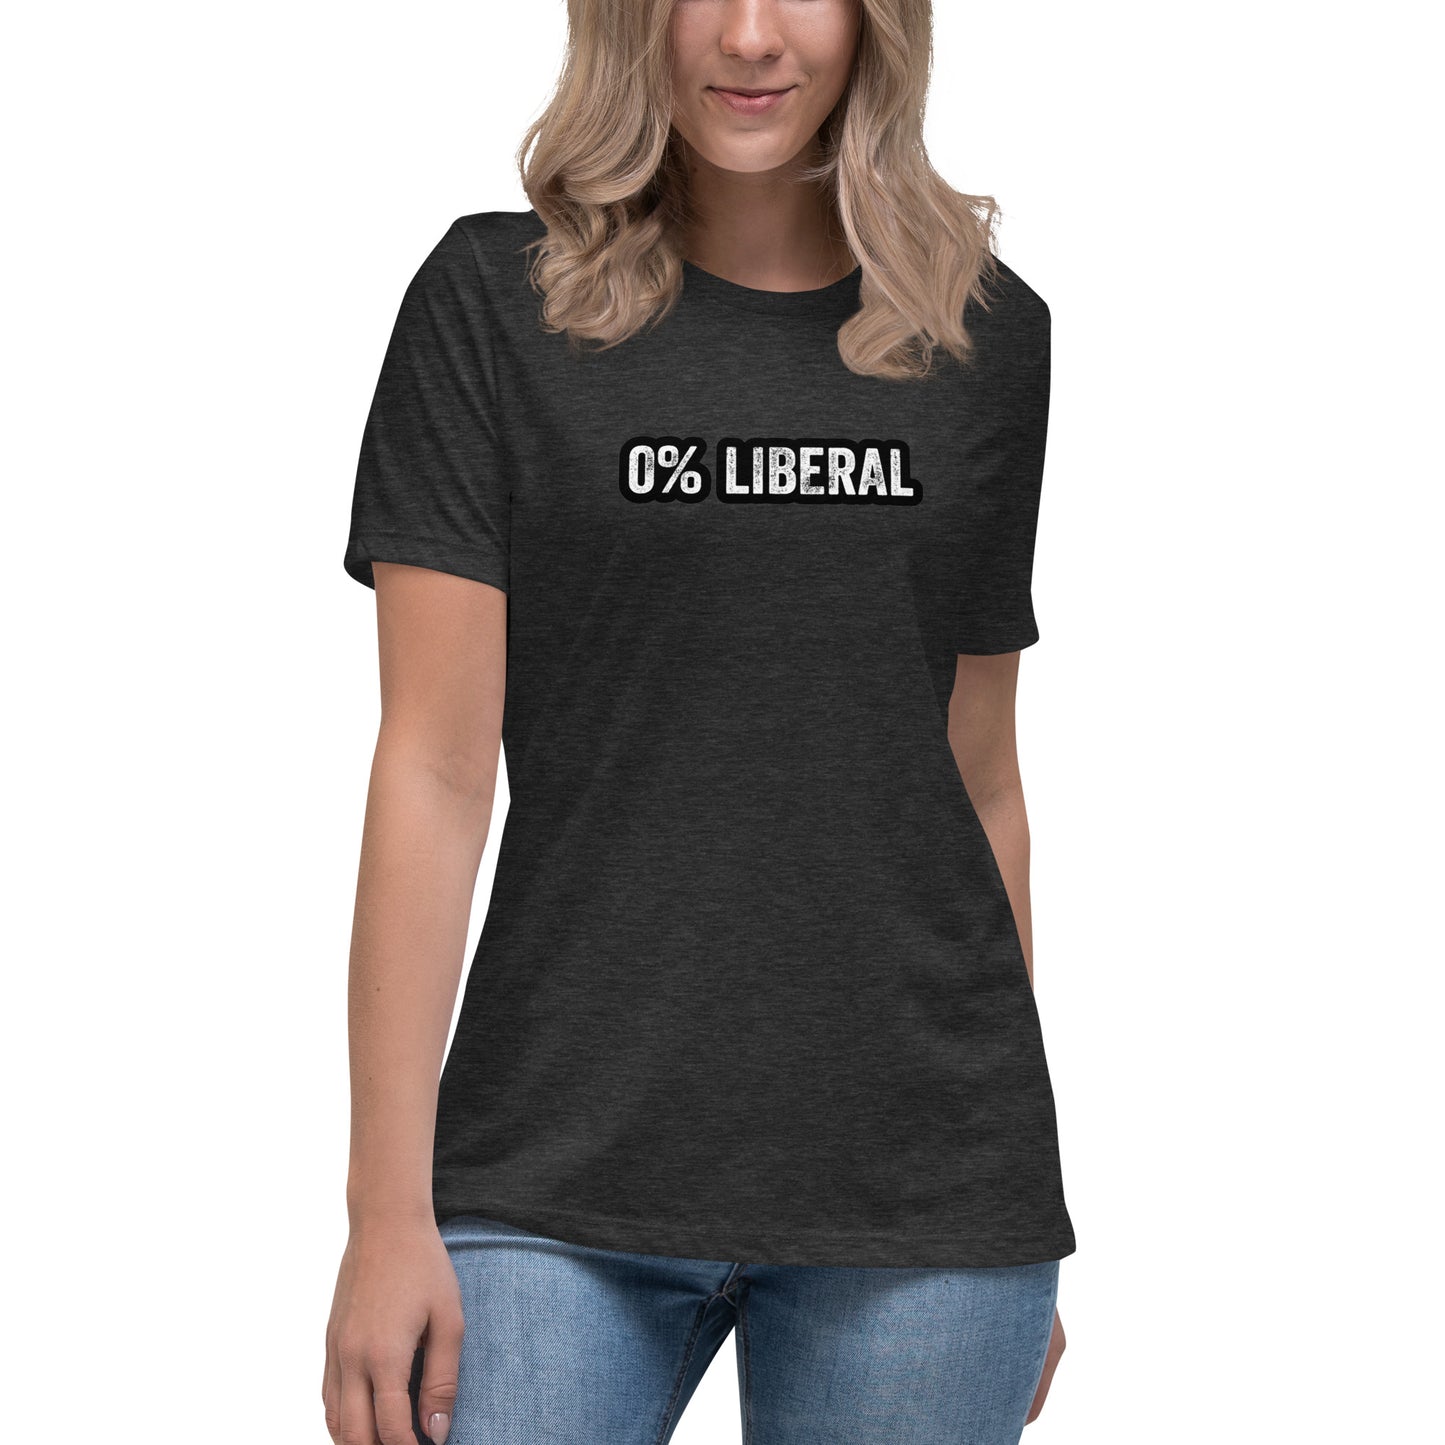 0% Liberal Women's Relaxed T-Shirt